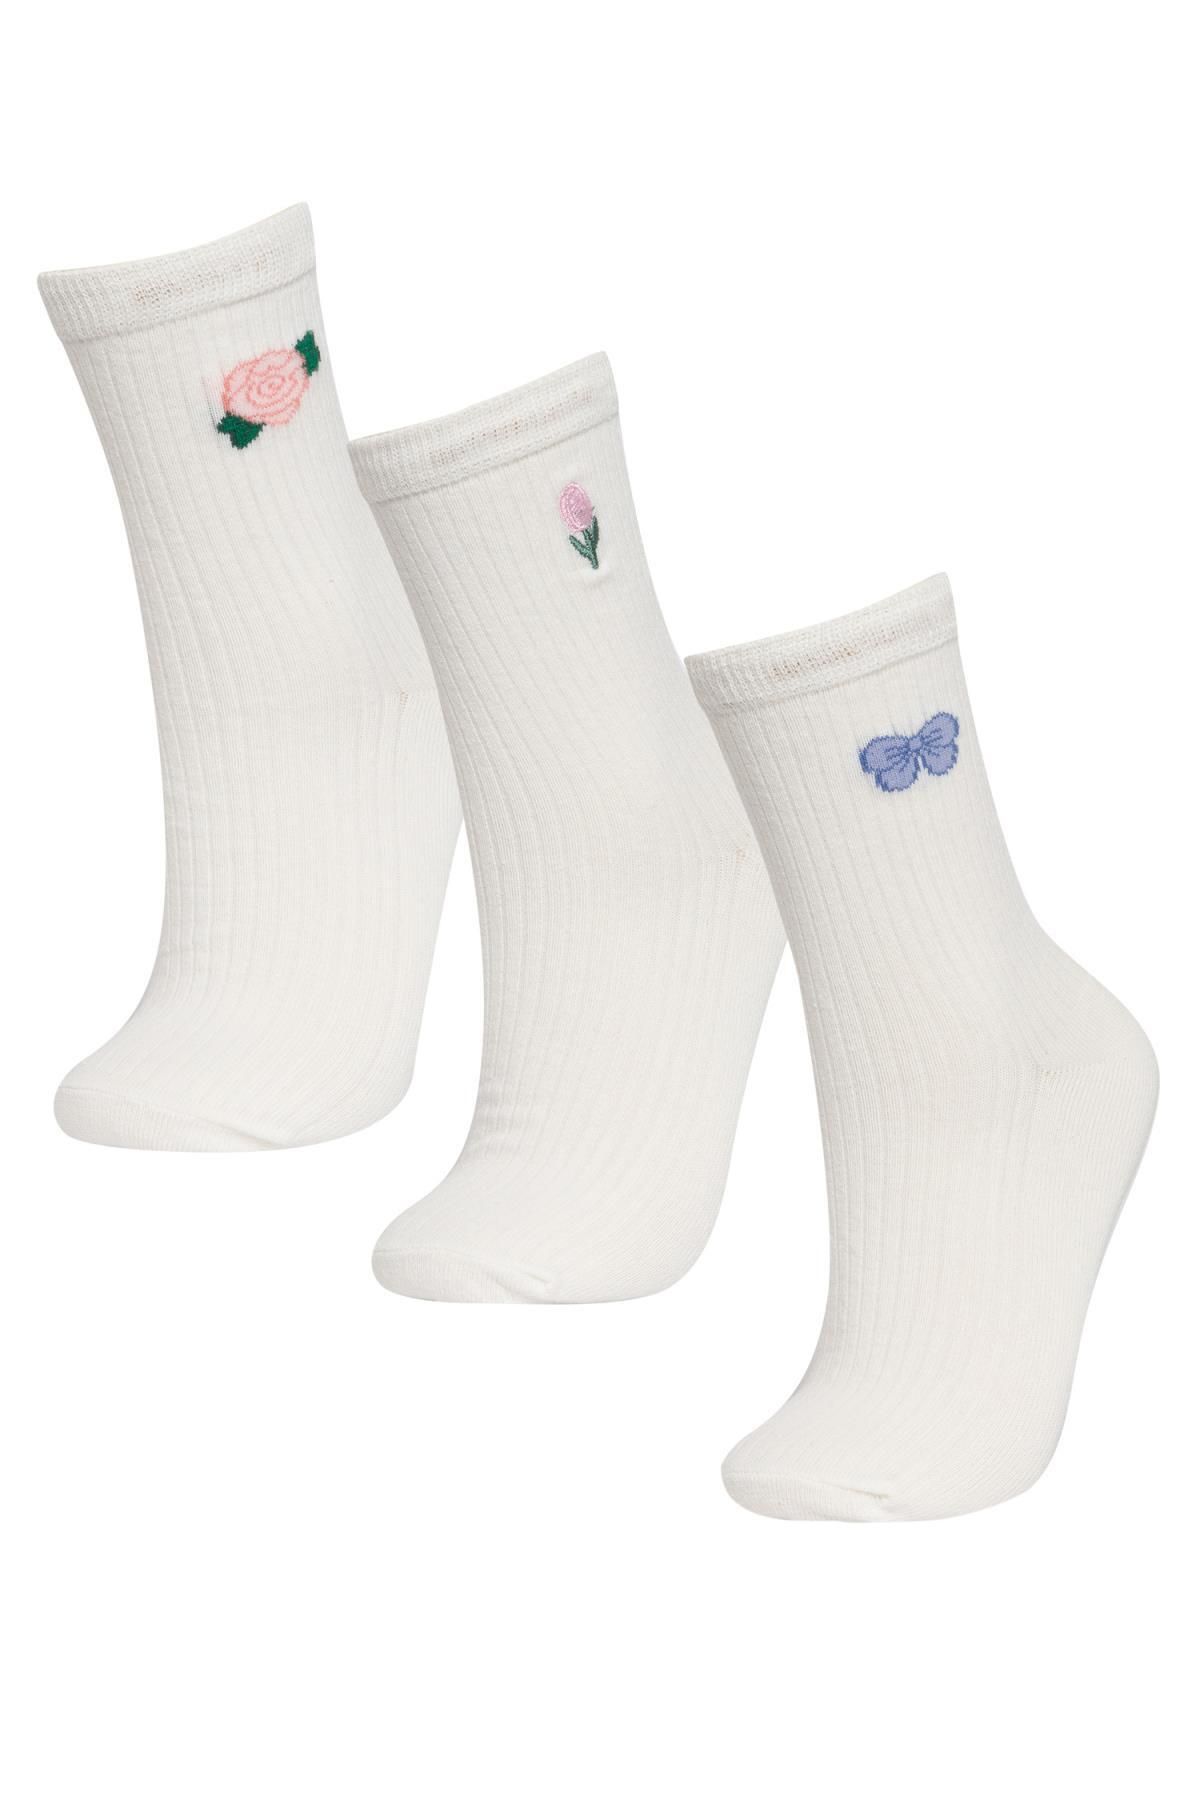 Defacto Kadın Gül Baskılı Nakış 3'lü Pamuklu Uzun Çorap B6103axns